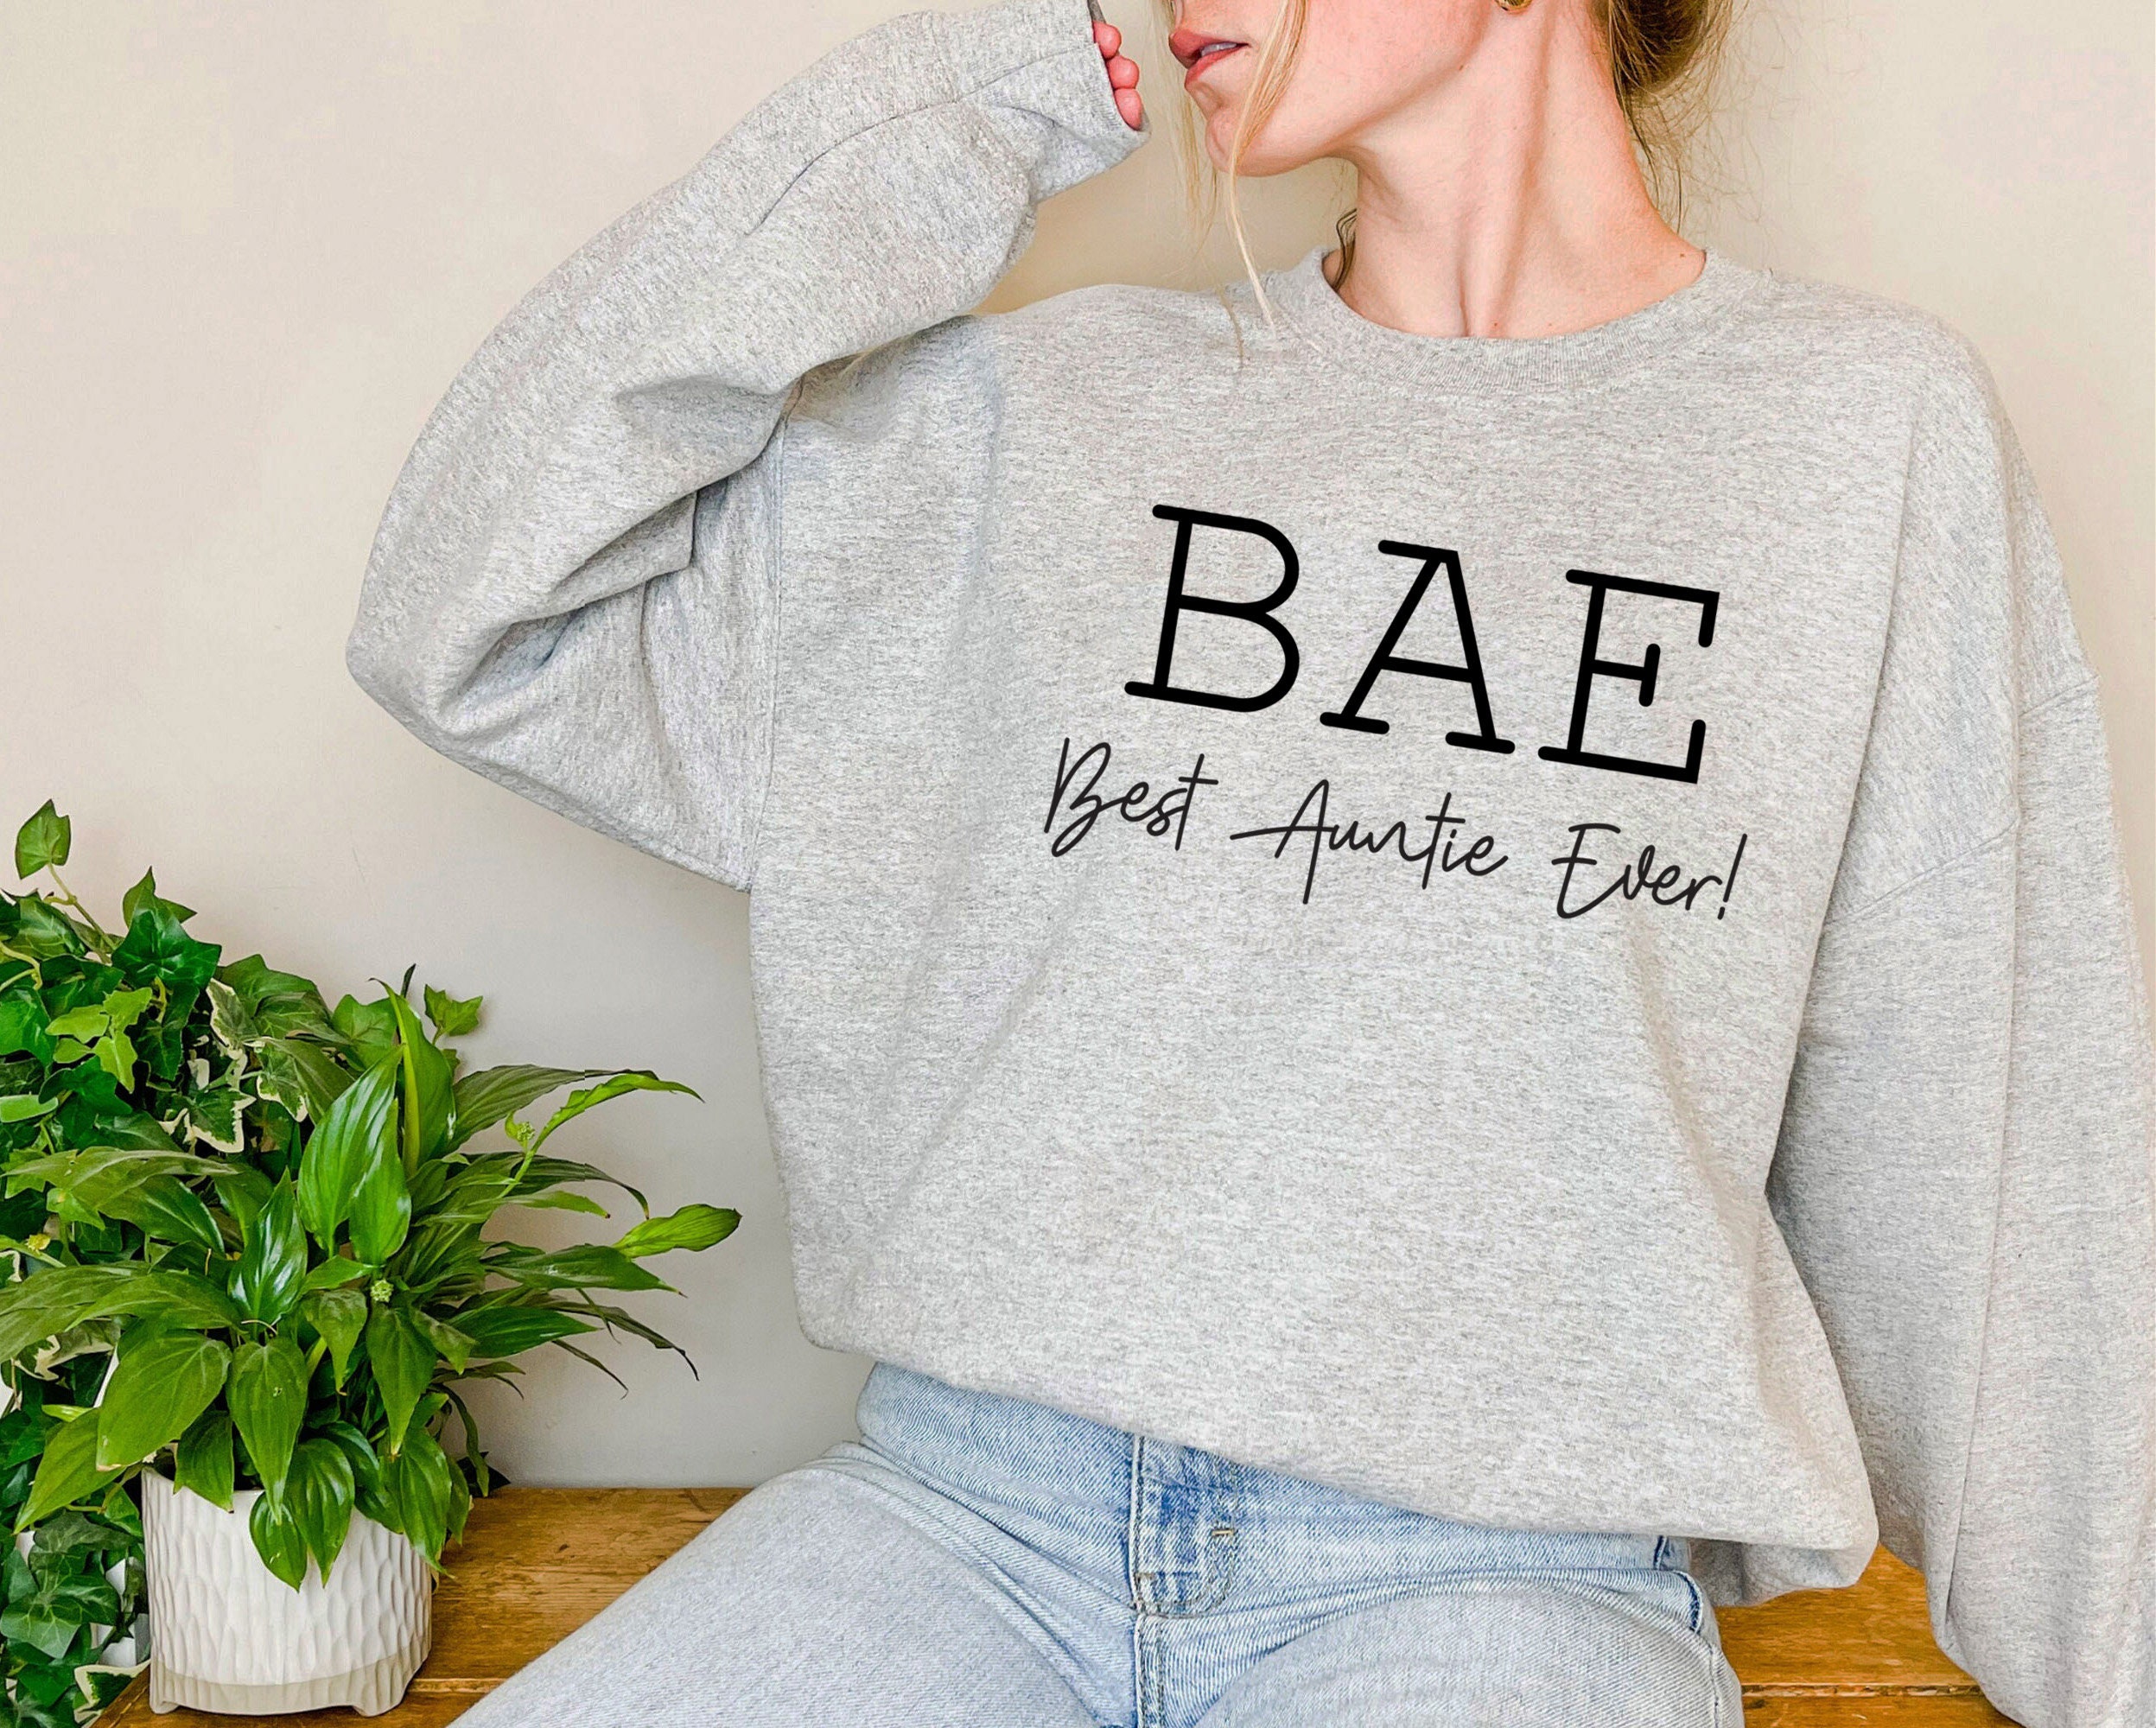 BAE Sweatshirt, Auntie Sweatshirt, Aunt Gift, Best Auntie Ever